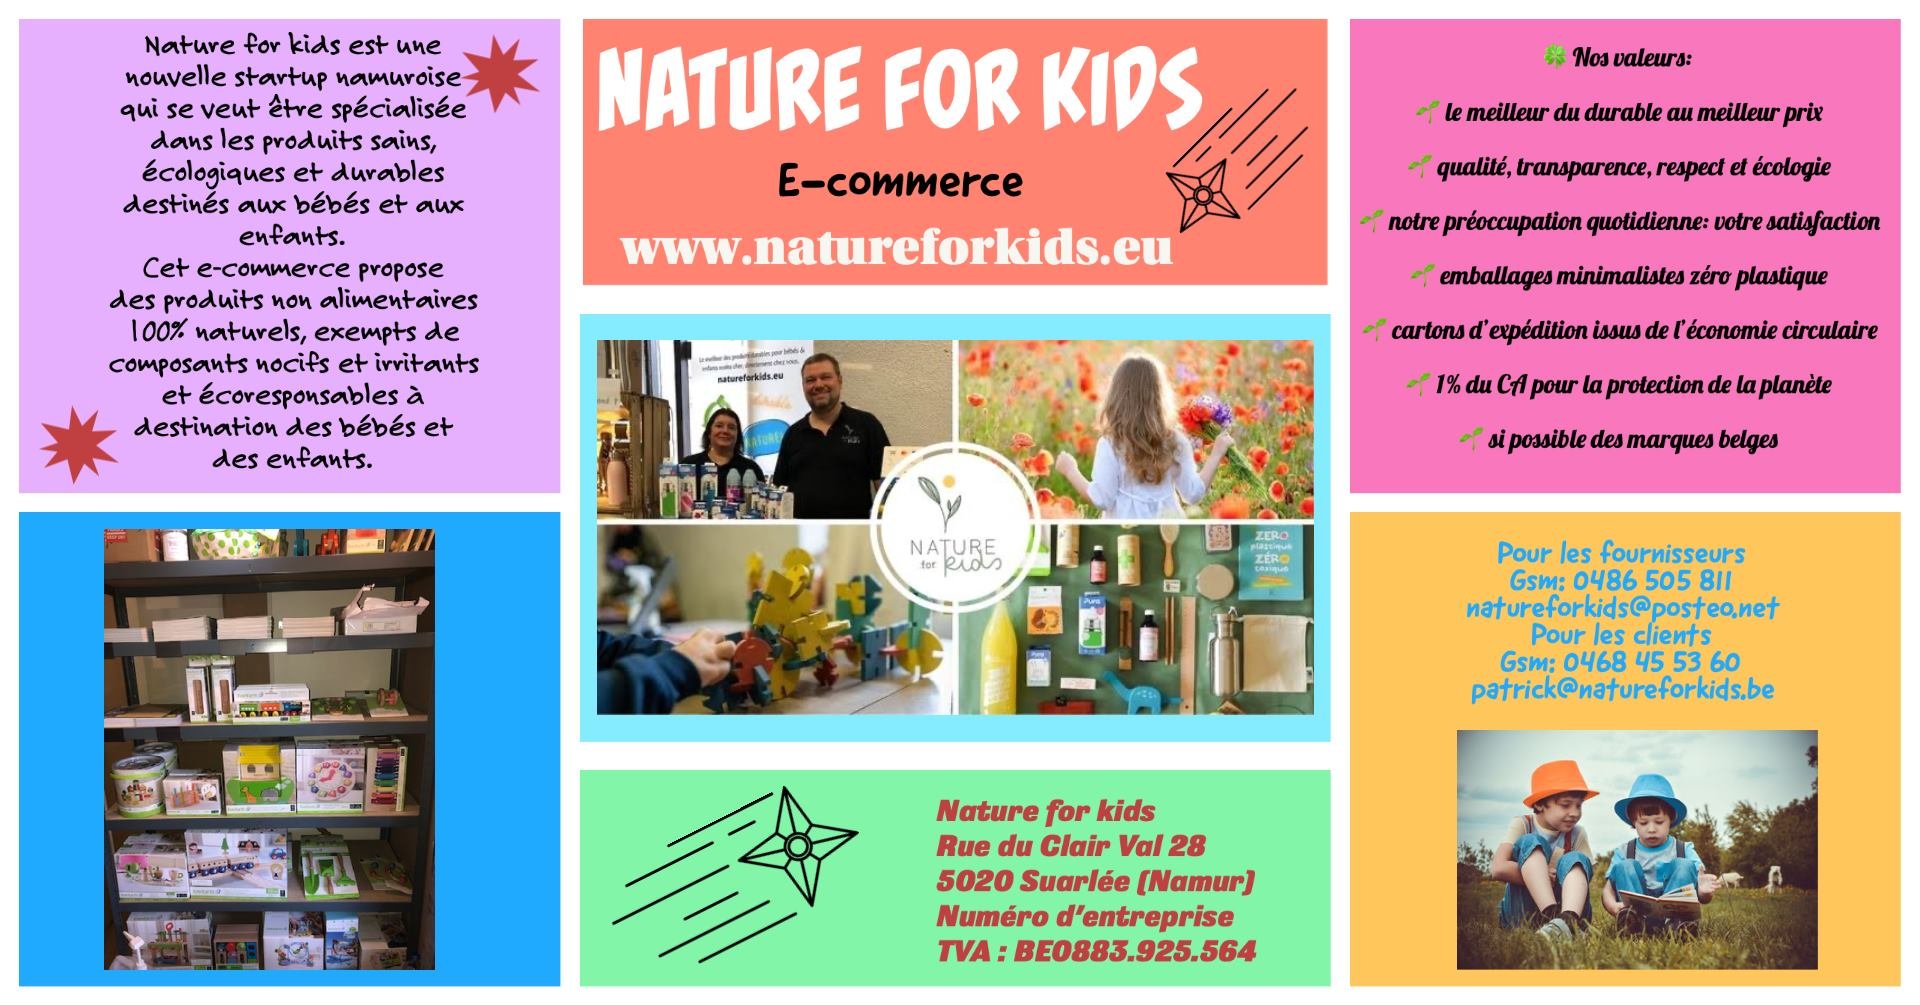 Naturel forKids c'est des produits sains, écologiques et durables destinés aux bébés et aux enfants.